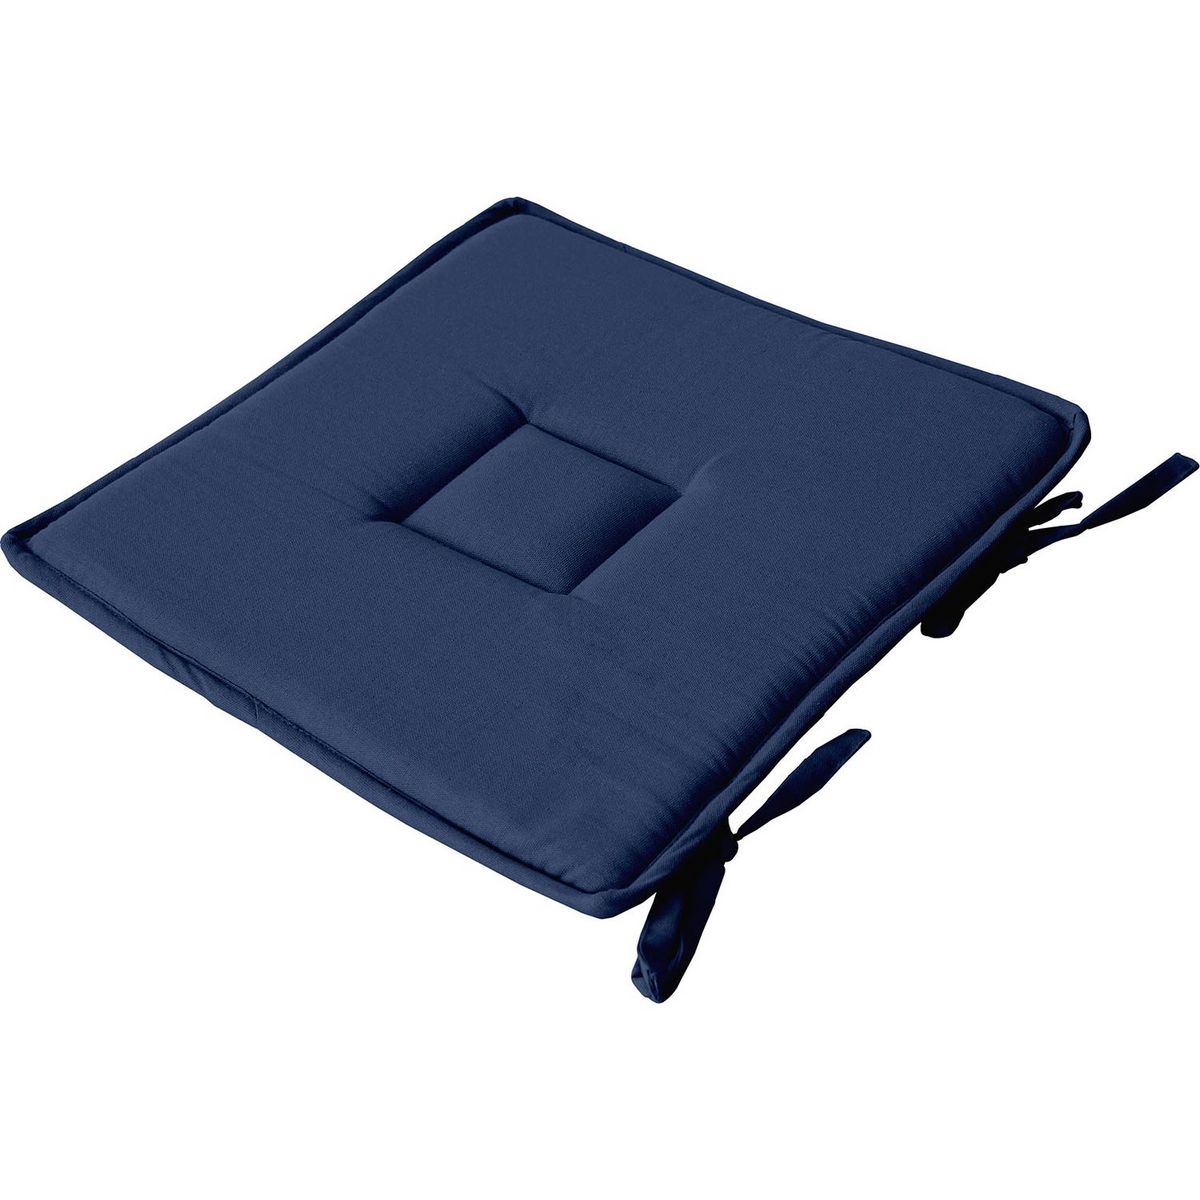  Galette de chaise uni effet Bachette - 40 x 40 cm - Bleu Marine